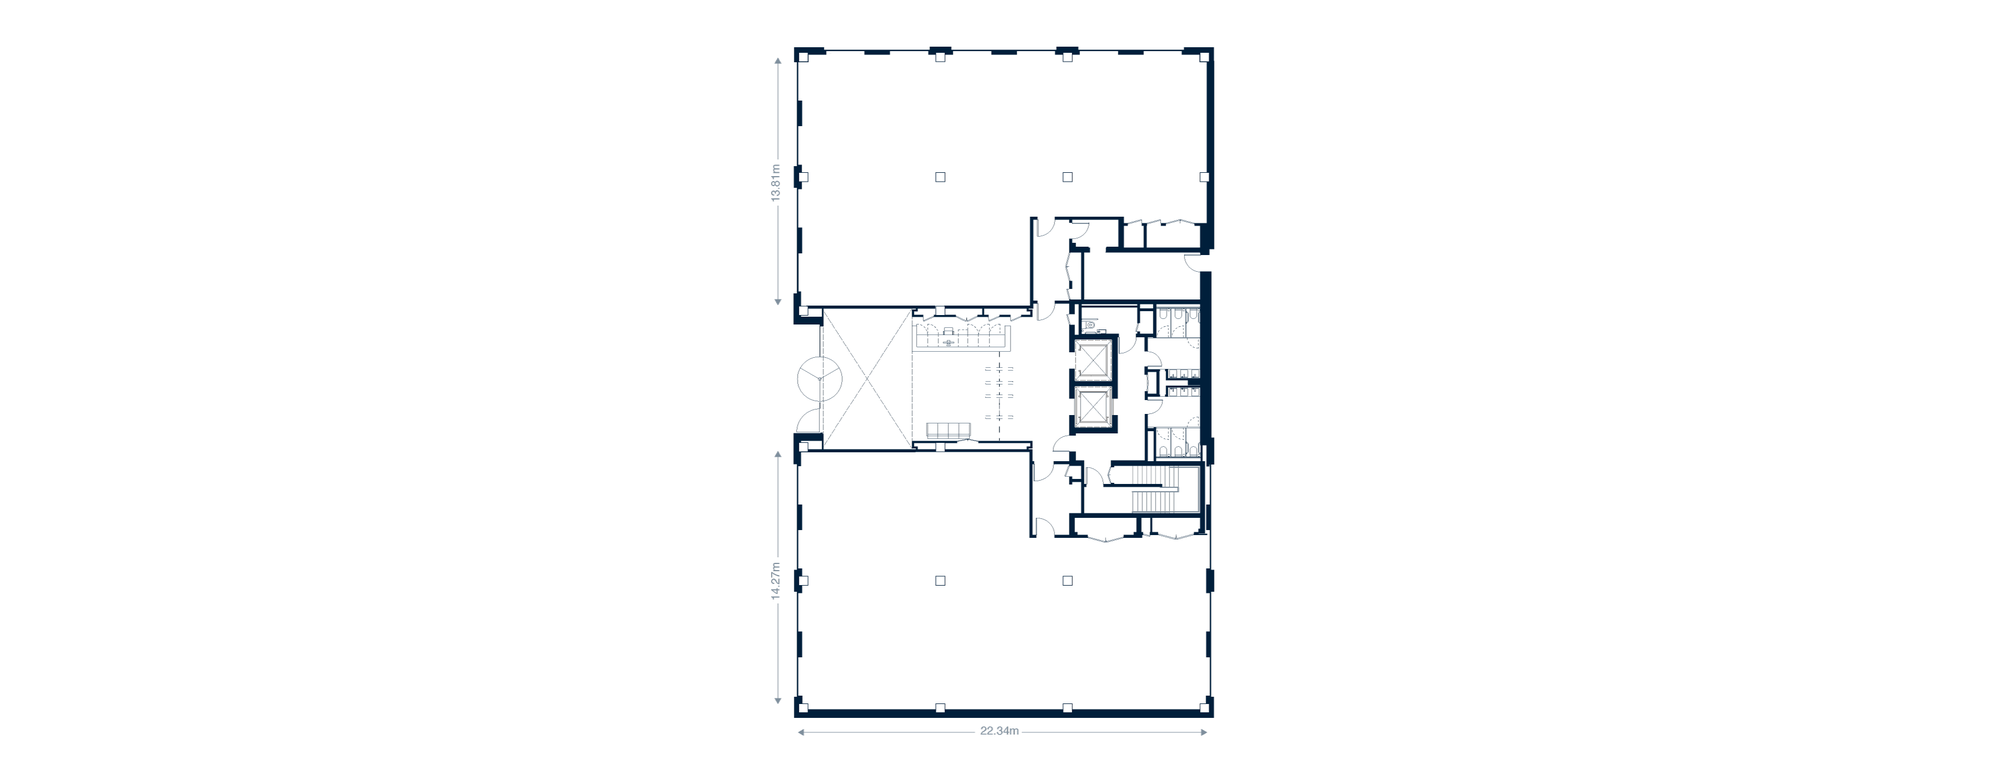 esq-one-edward-square-ground-floor-stage-5-unfurnished-desktop-45177.png